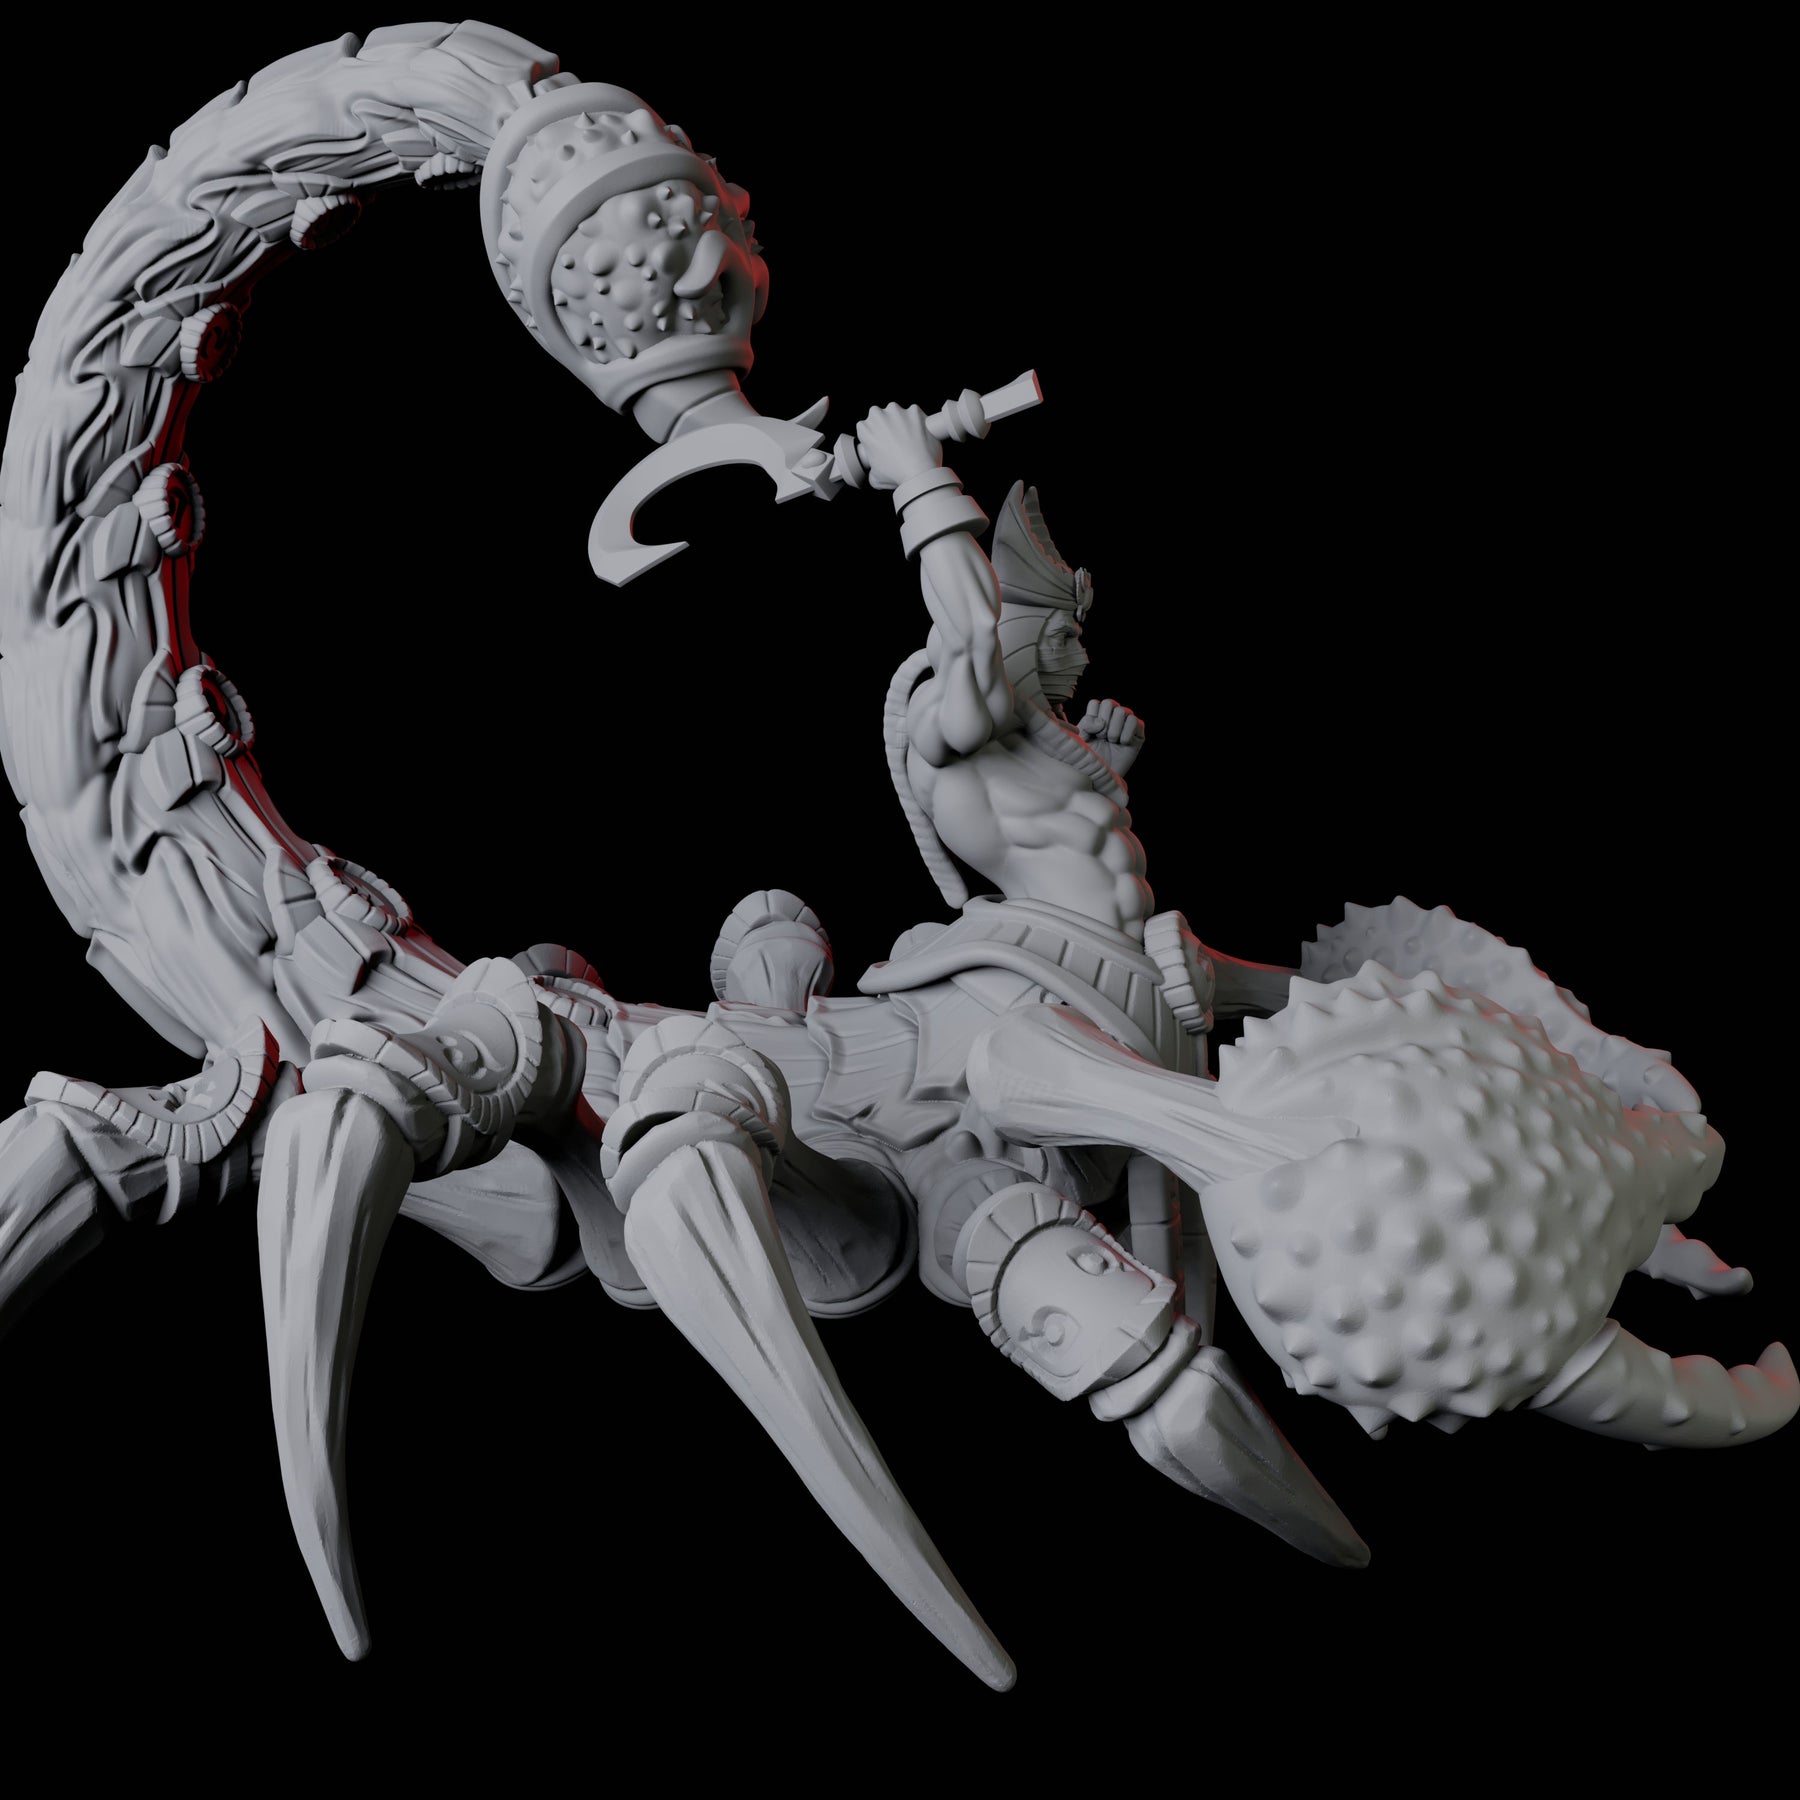 Giant Scorpion - 2 Variations de Epic Miniatures pour donjon & dragon,  warhammer et autres jeux de rôles